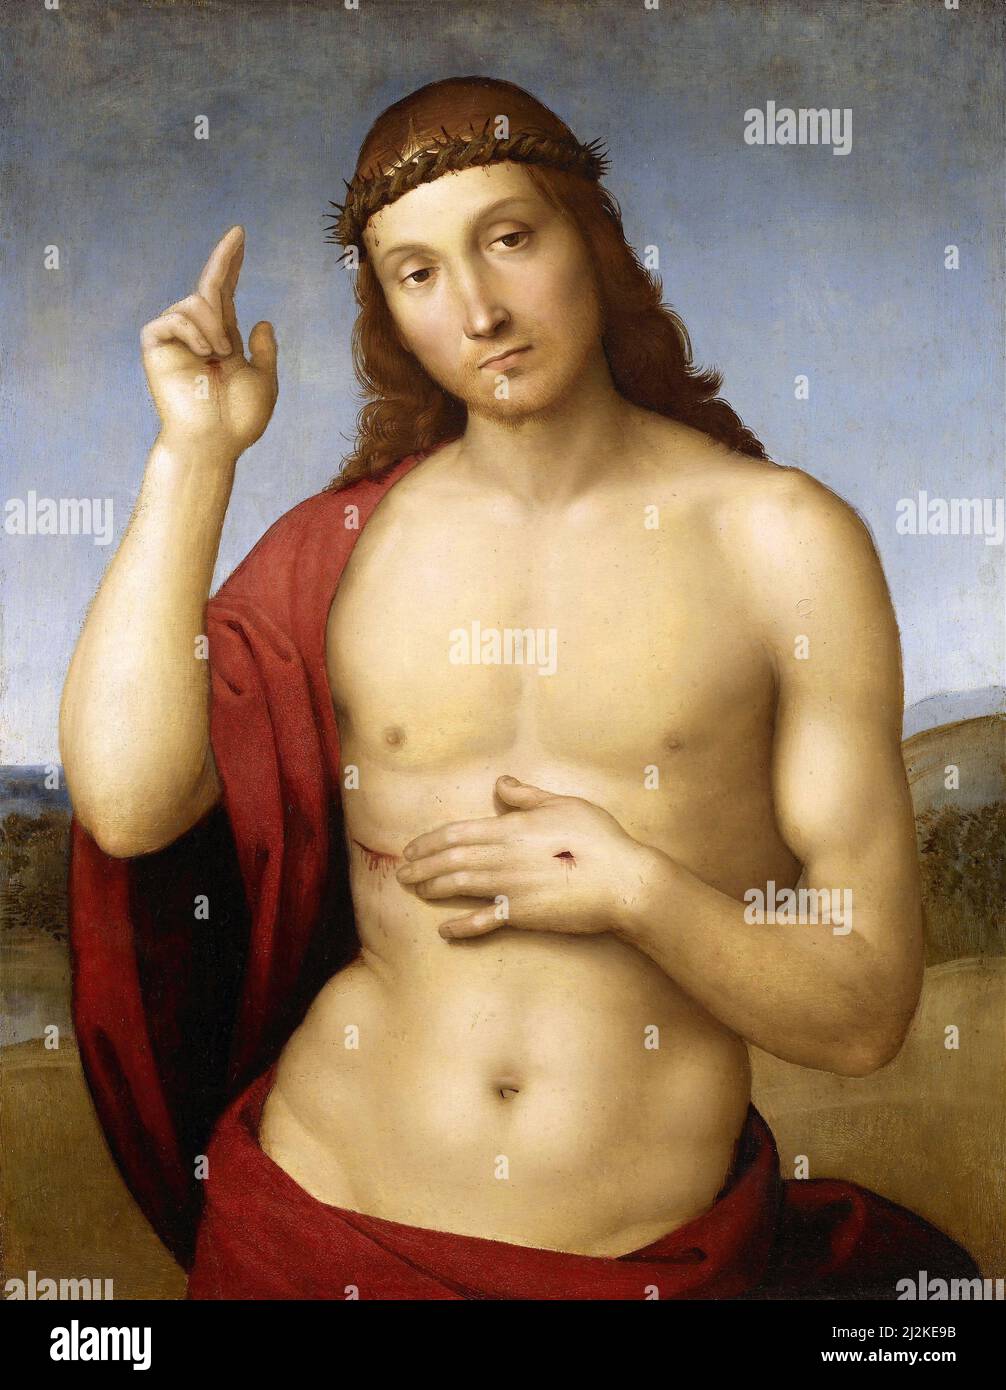 Antike Kunst des italienischen Künstlers Raphael - Christ Blessing (Pax Vobiscum) (1505-1506).Hochrenaissance-Kunst von Rafaello Sanzio da Urbino 1483 - 1520. Stockfoto